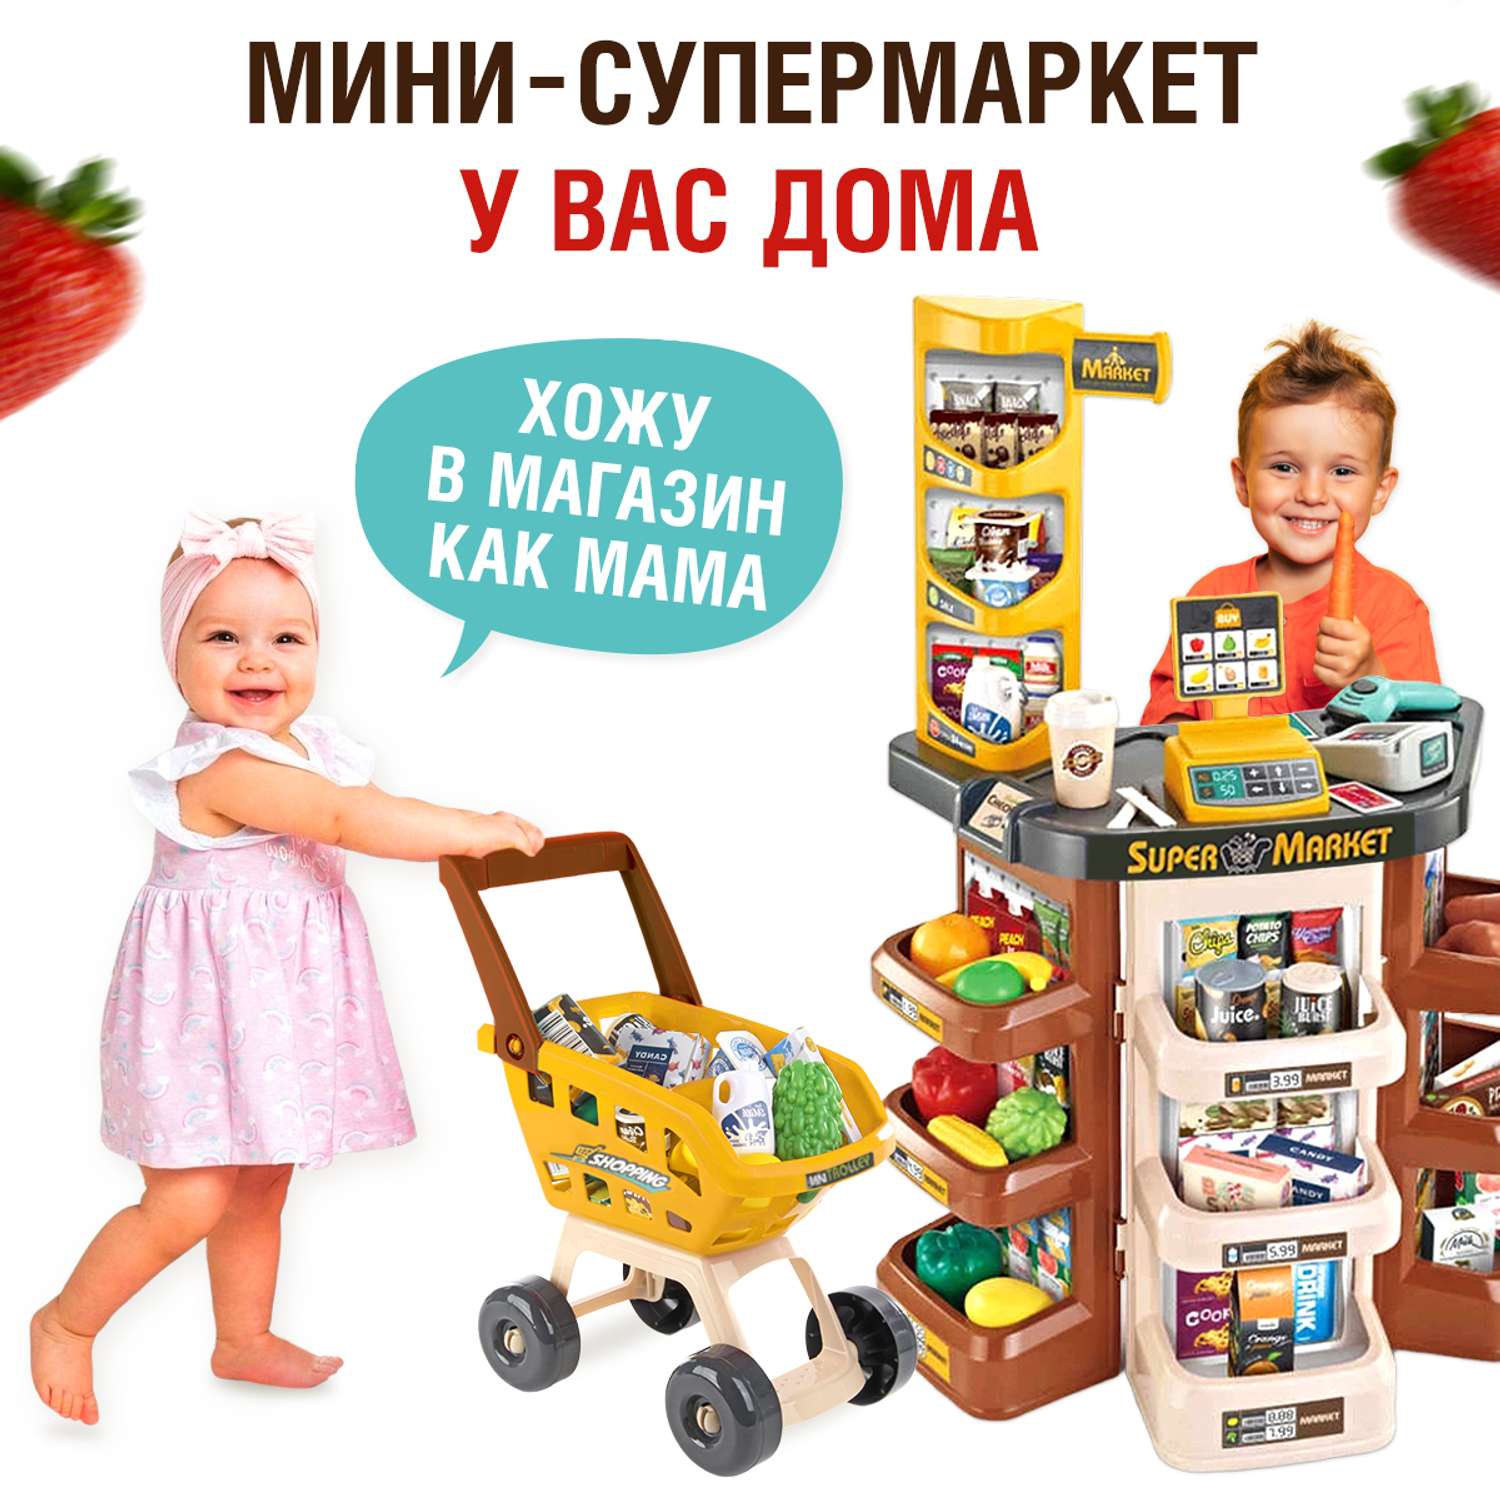 Игровой набор FAIRYMARY Супермаркет с тележкой и продуктами - фото 4